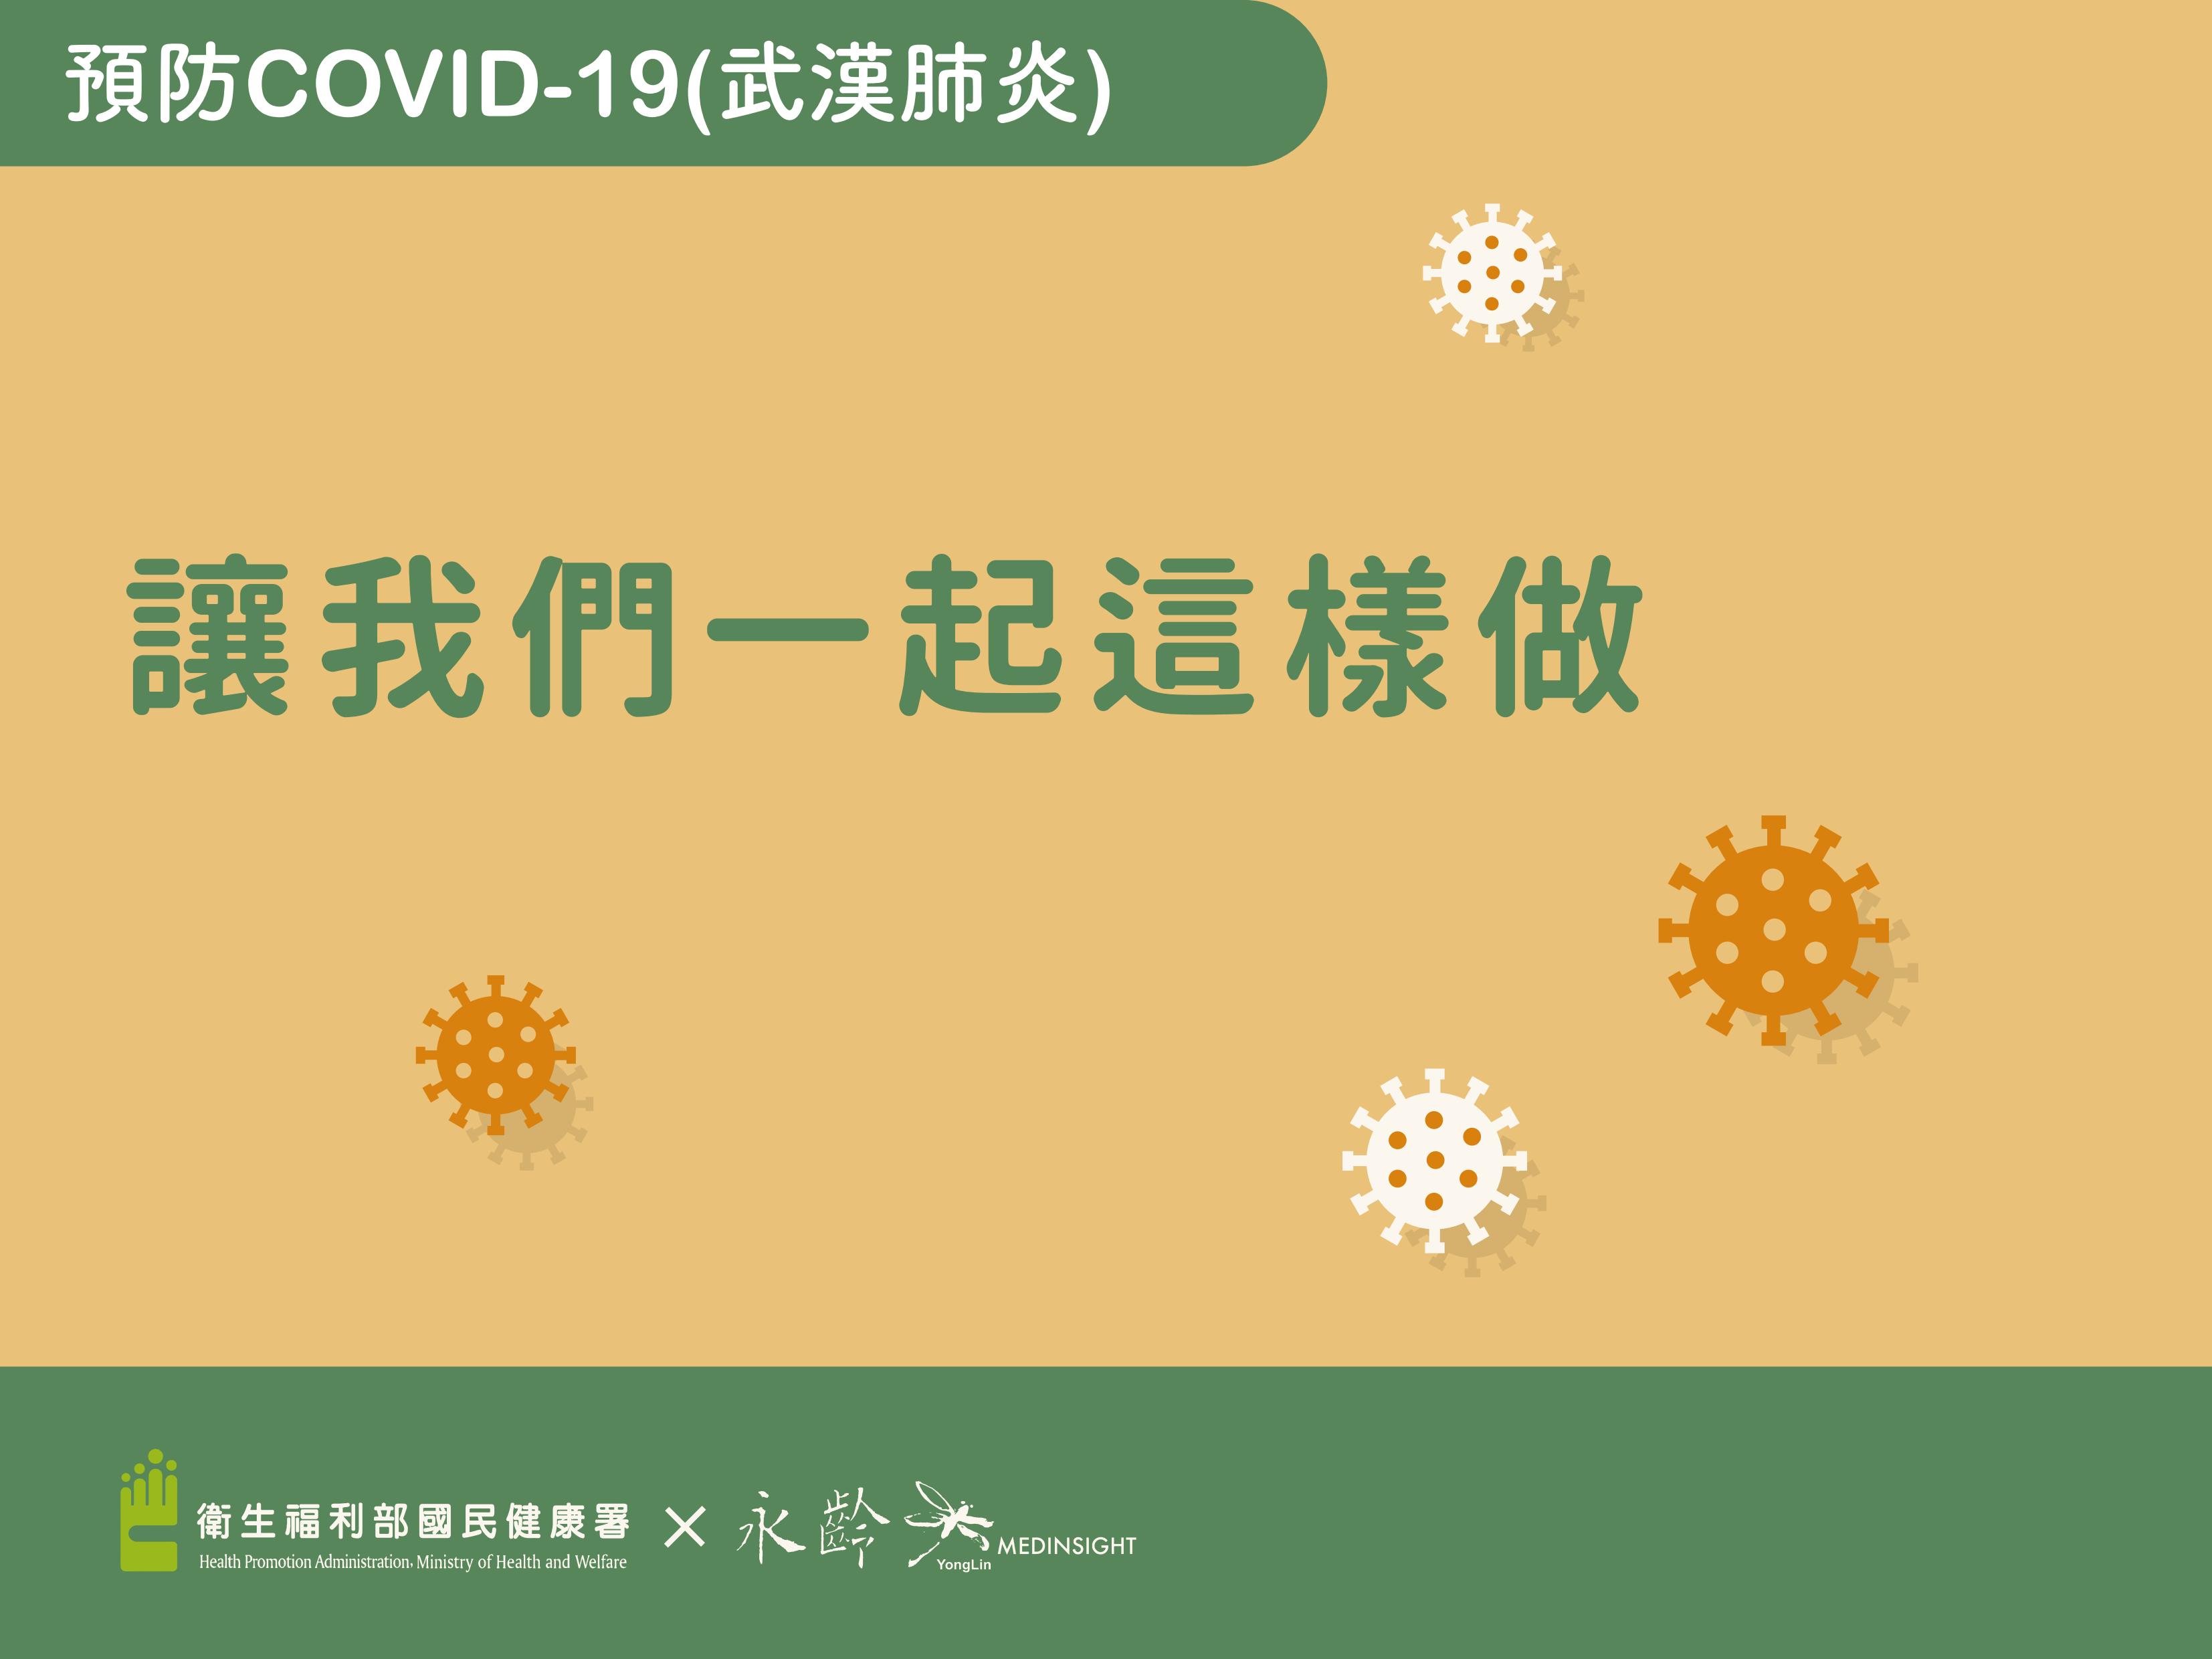  預防COVID-19(武漢肺炎)-讓我們一起這樣做_懶人包文章照片